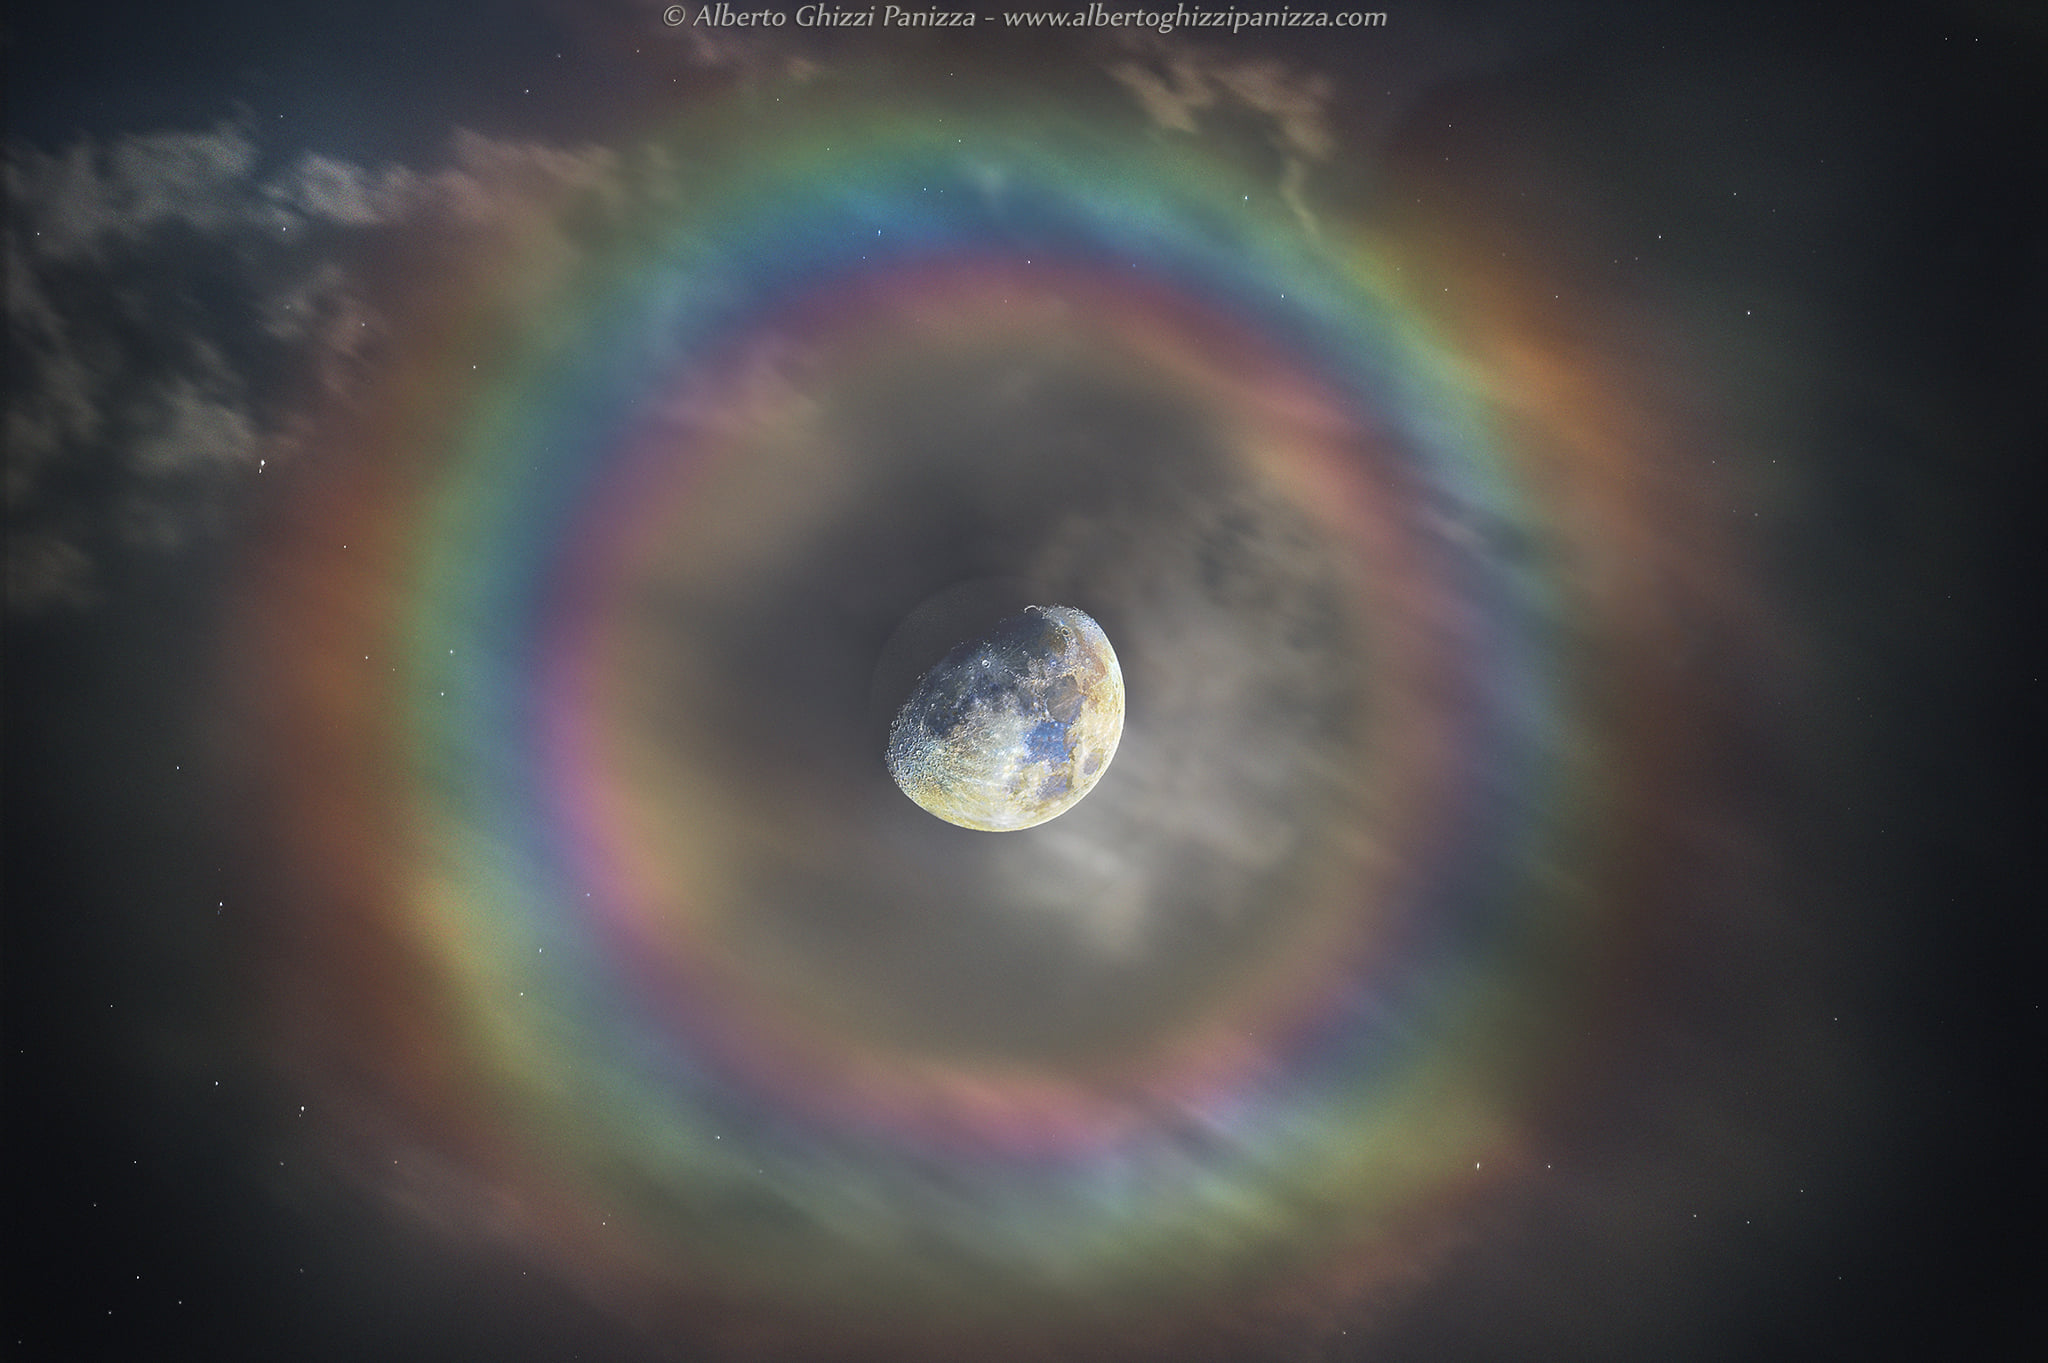 Fotografía la Luna con un espectacular halo de colores